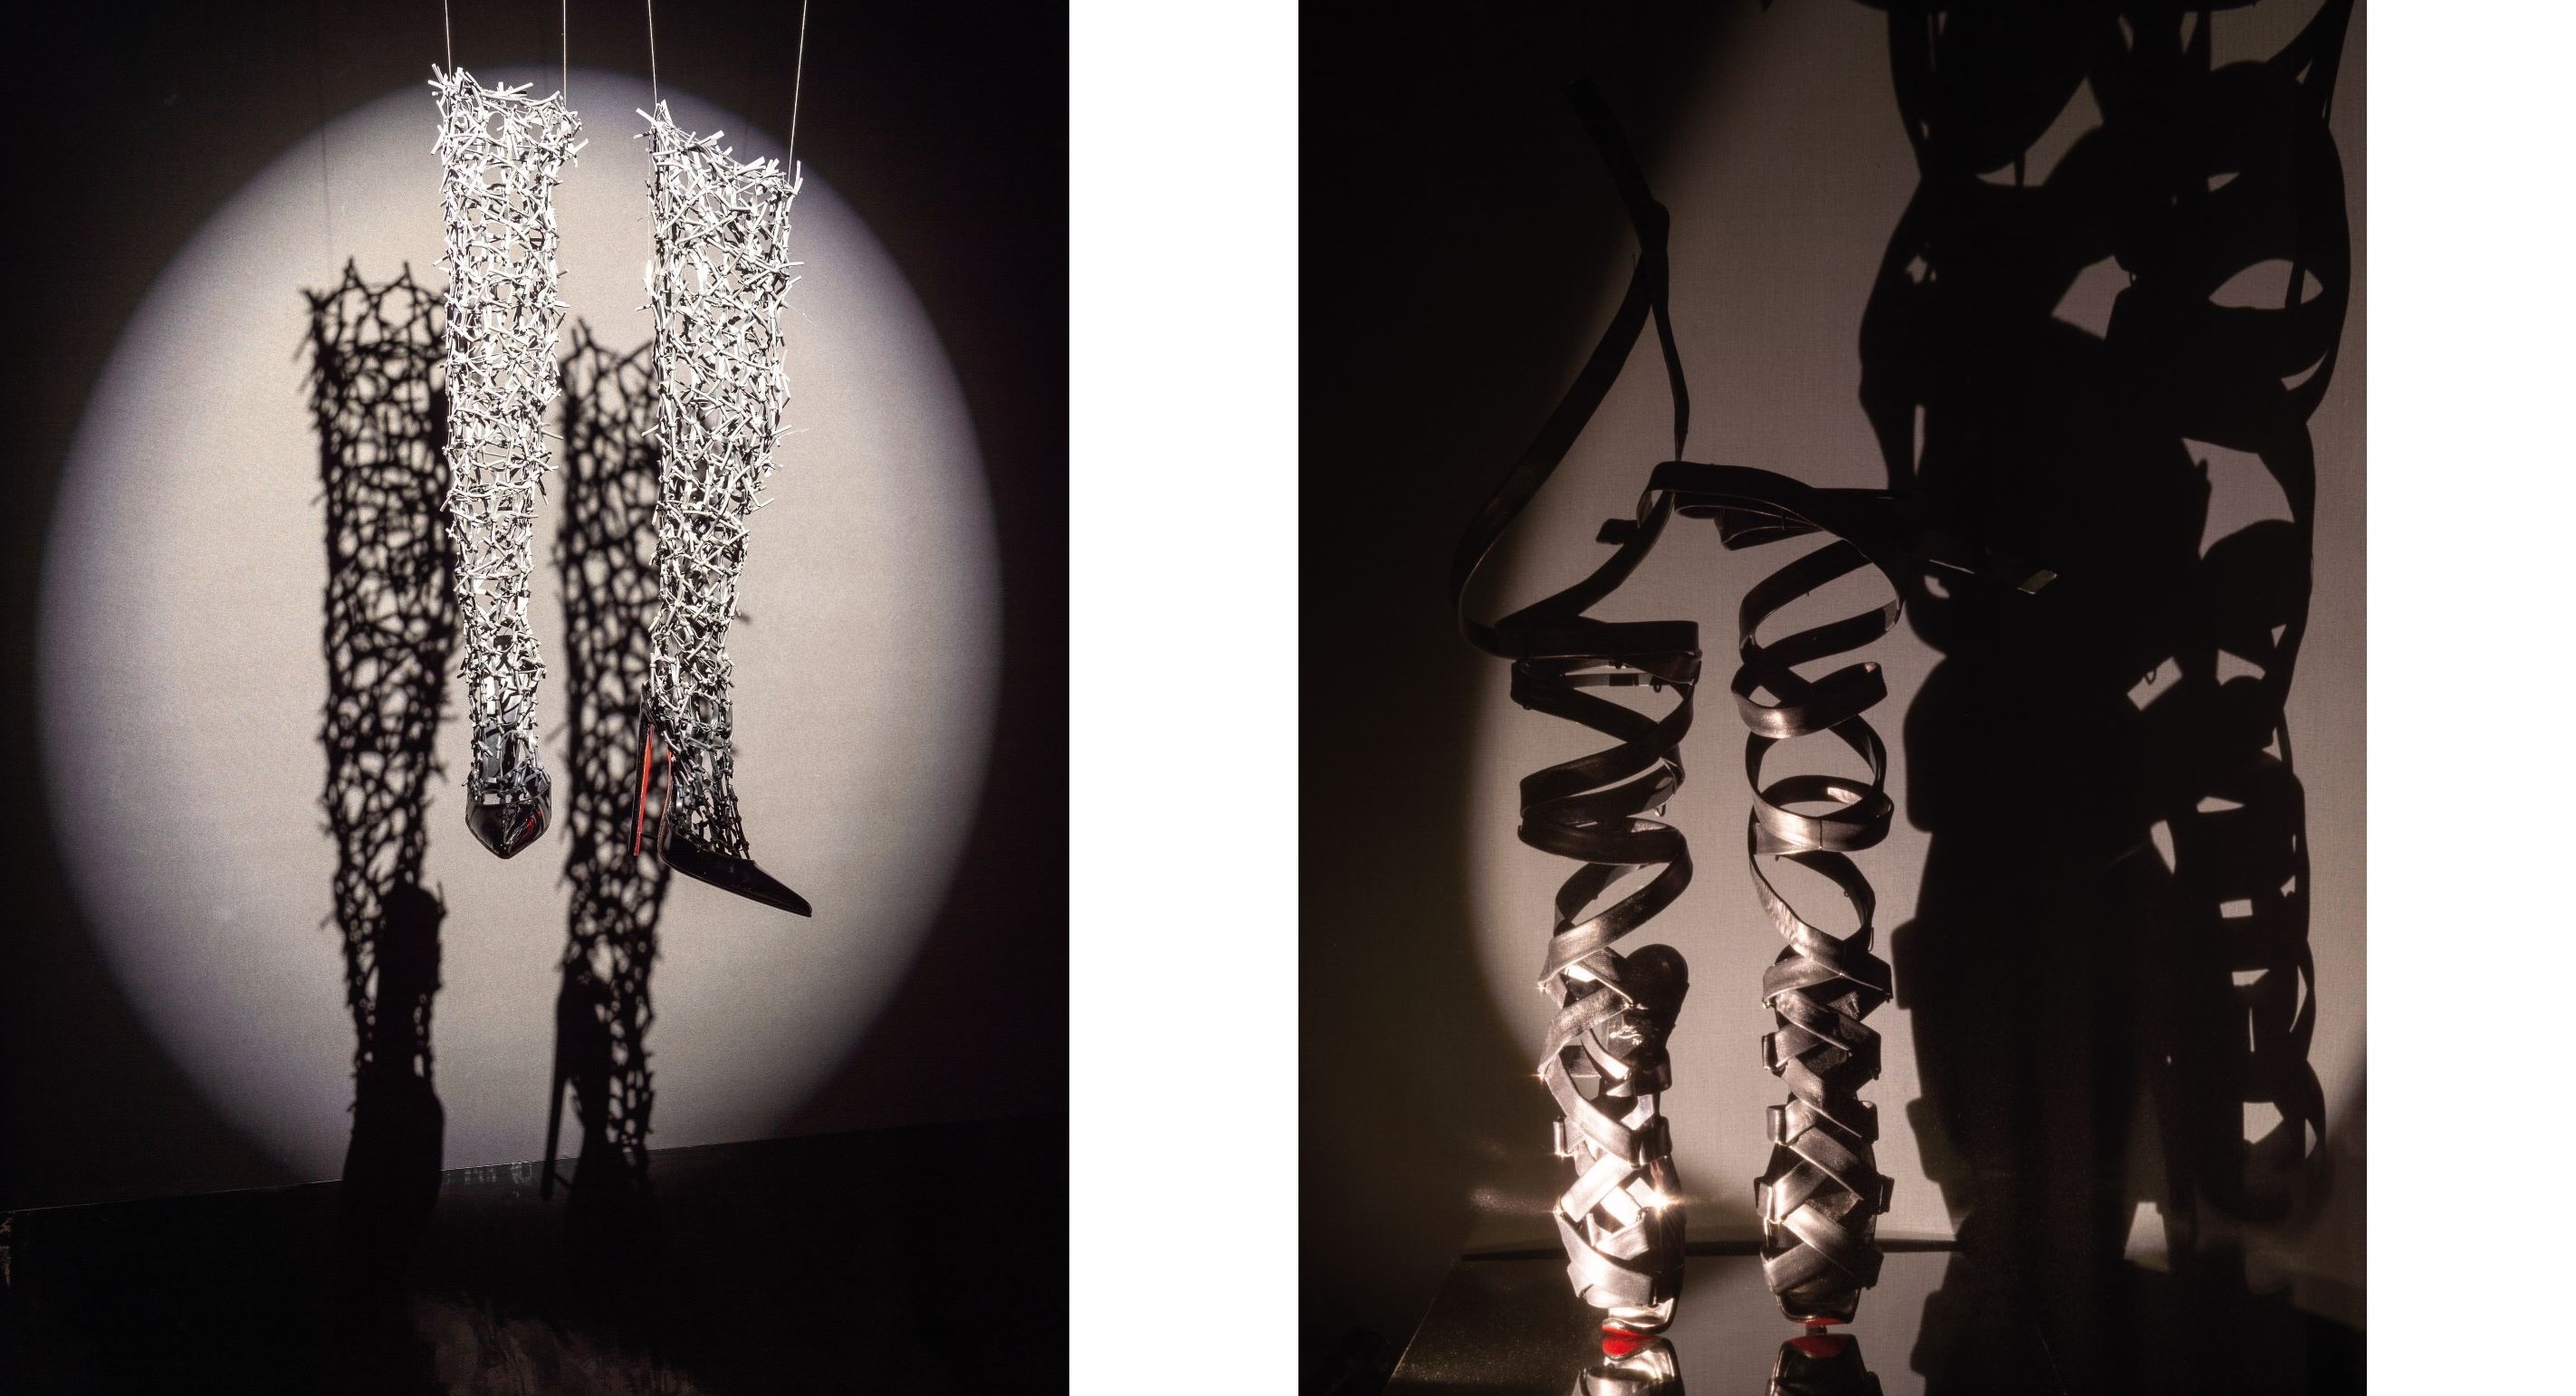 大衛林區與 Christian Louboutin 於 2007 年合作的影像，以失去功能的鞋履探討戀物的本質，指出終極的幻想對象其實是足弓。